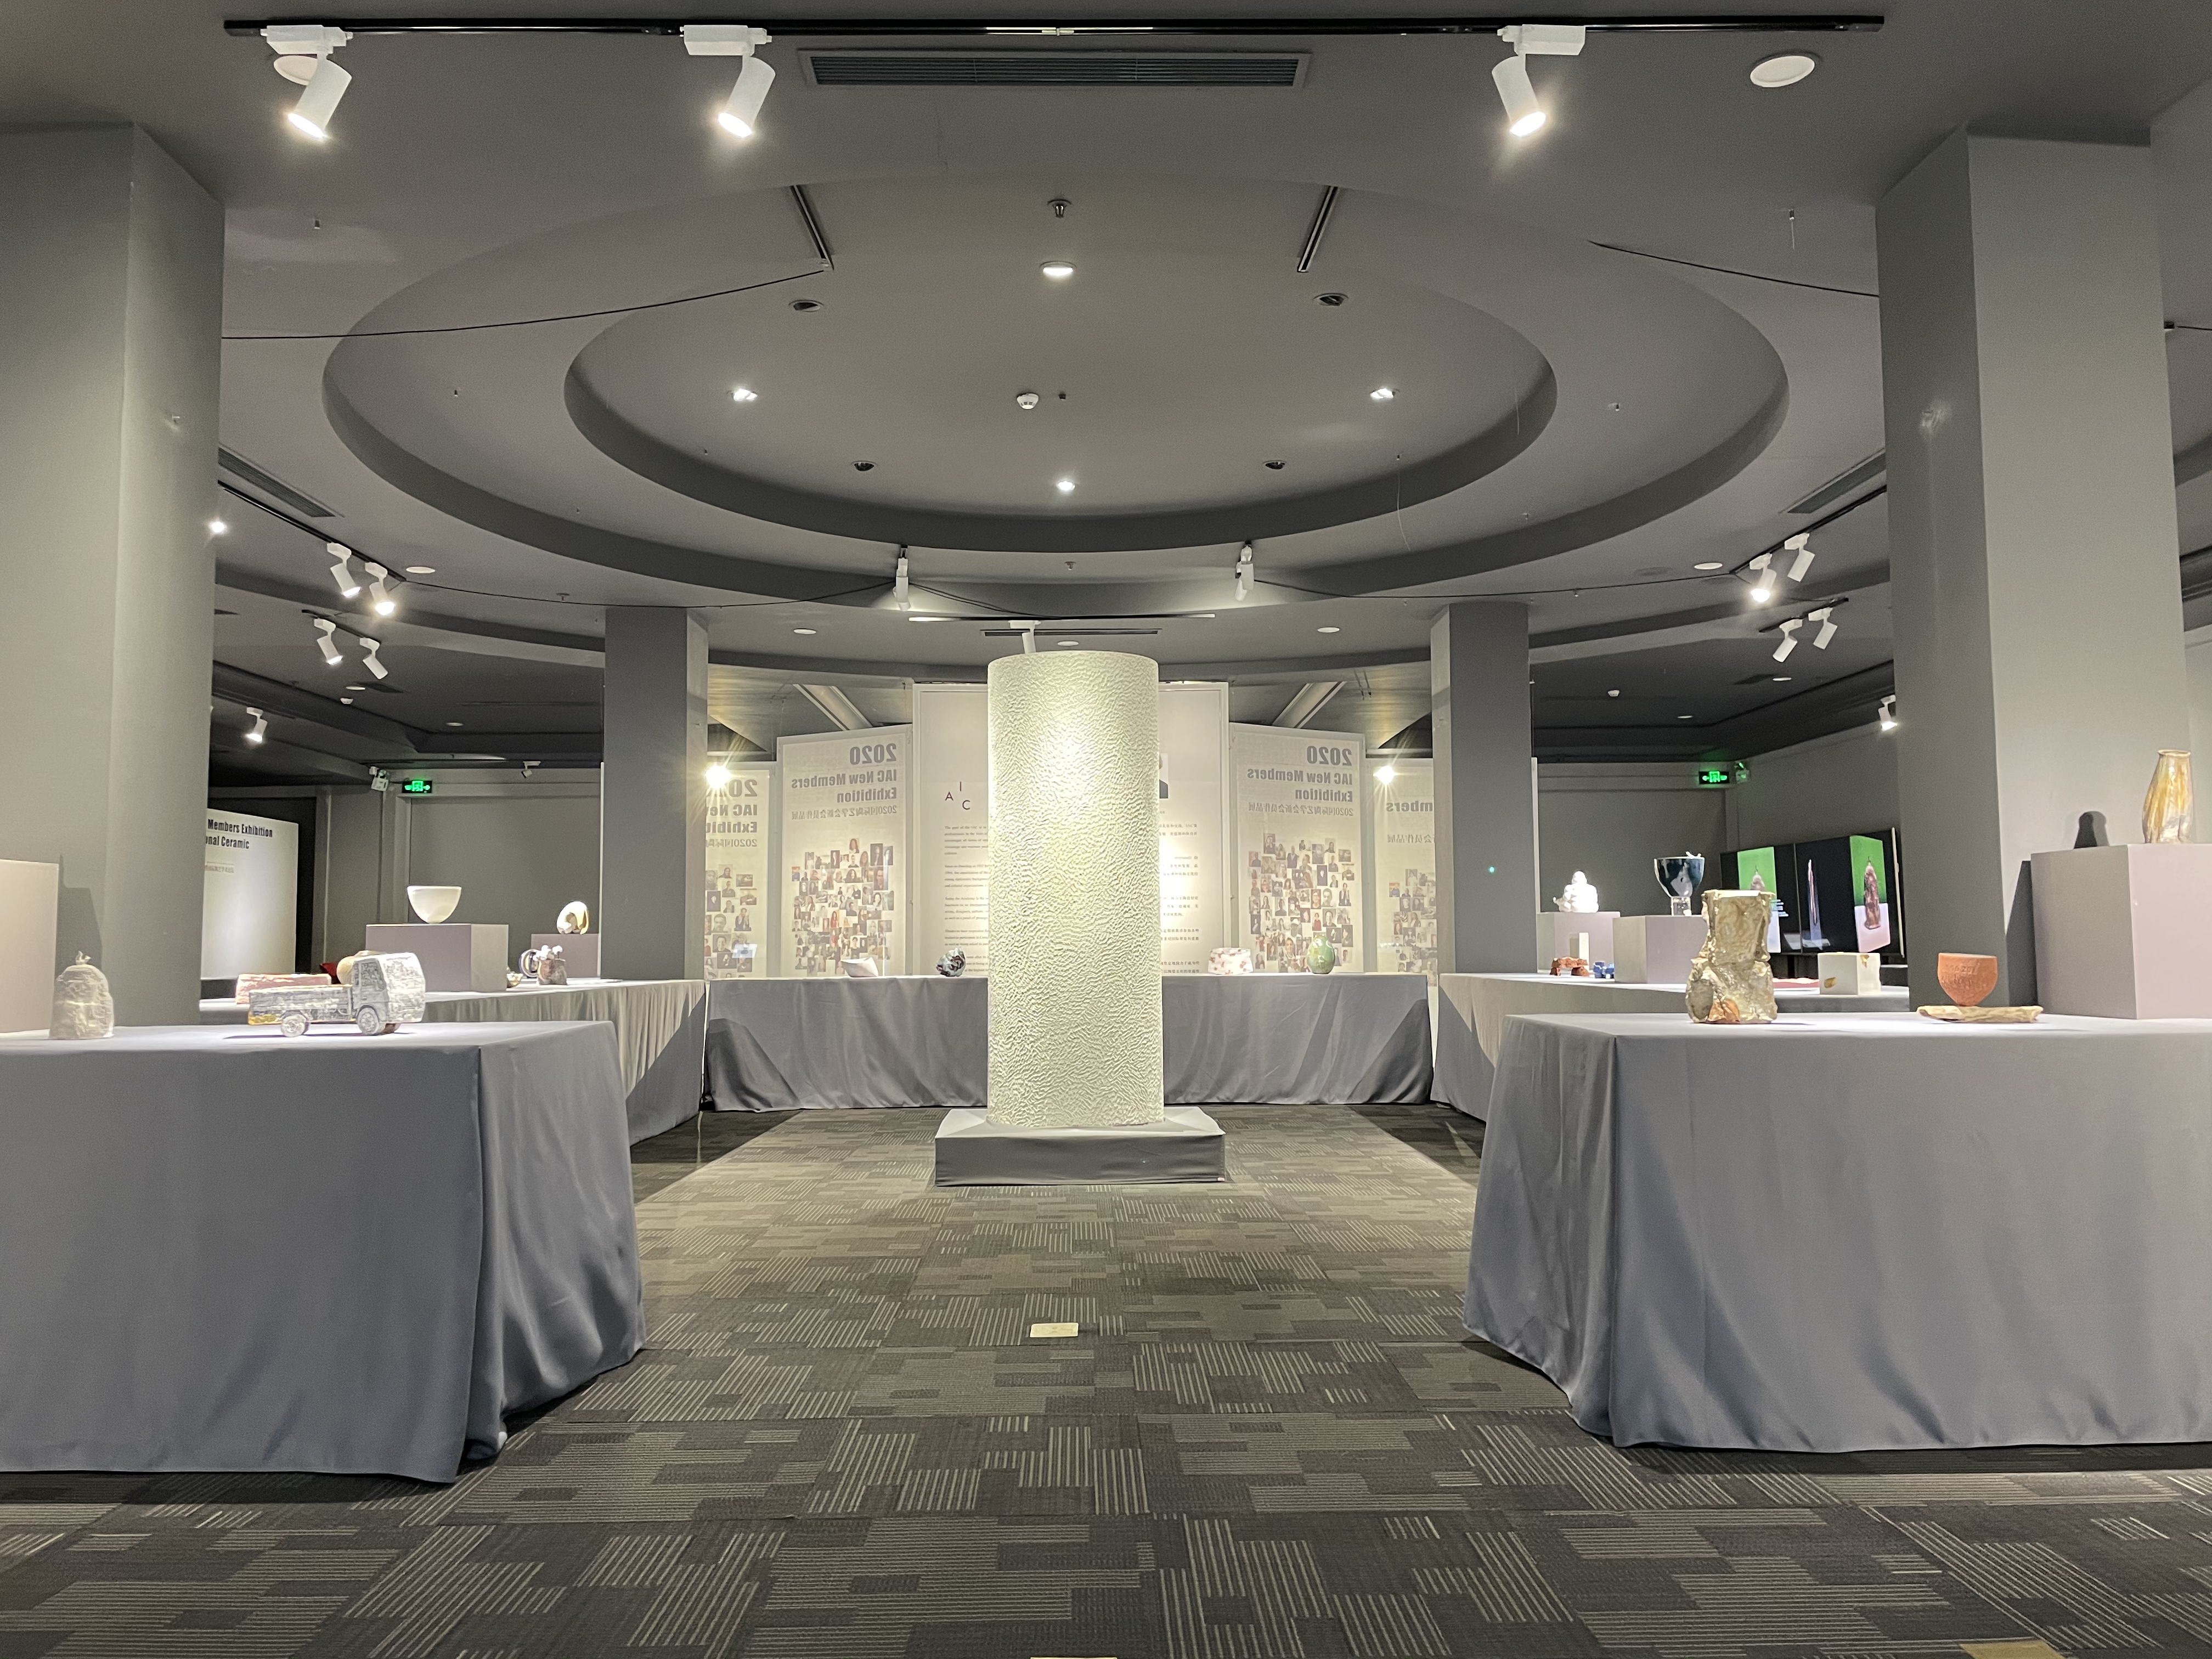 2020国际陶艺学会新会员作品展在京隆重举办